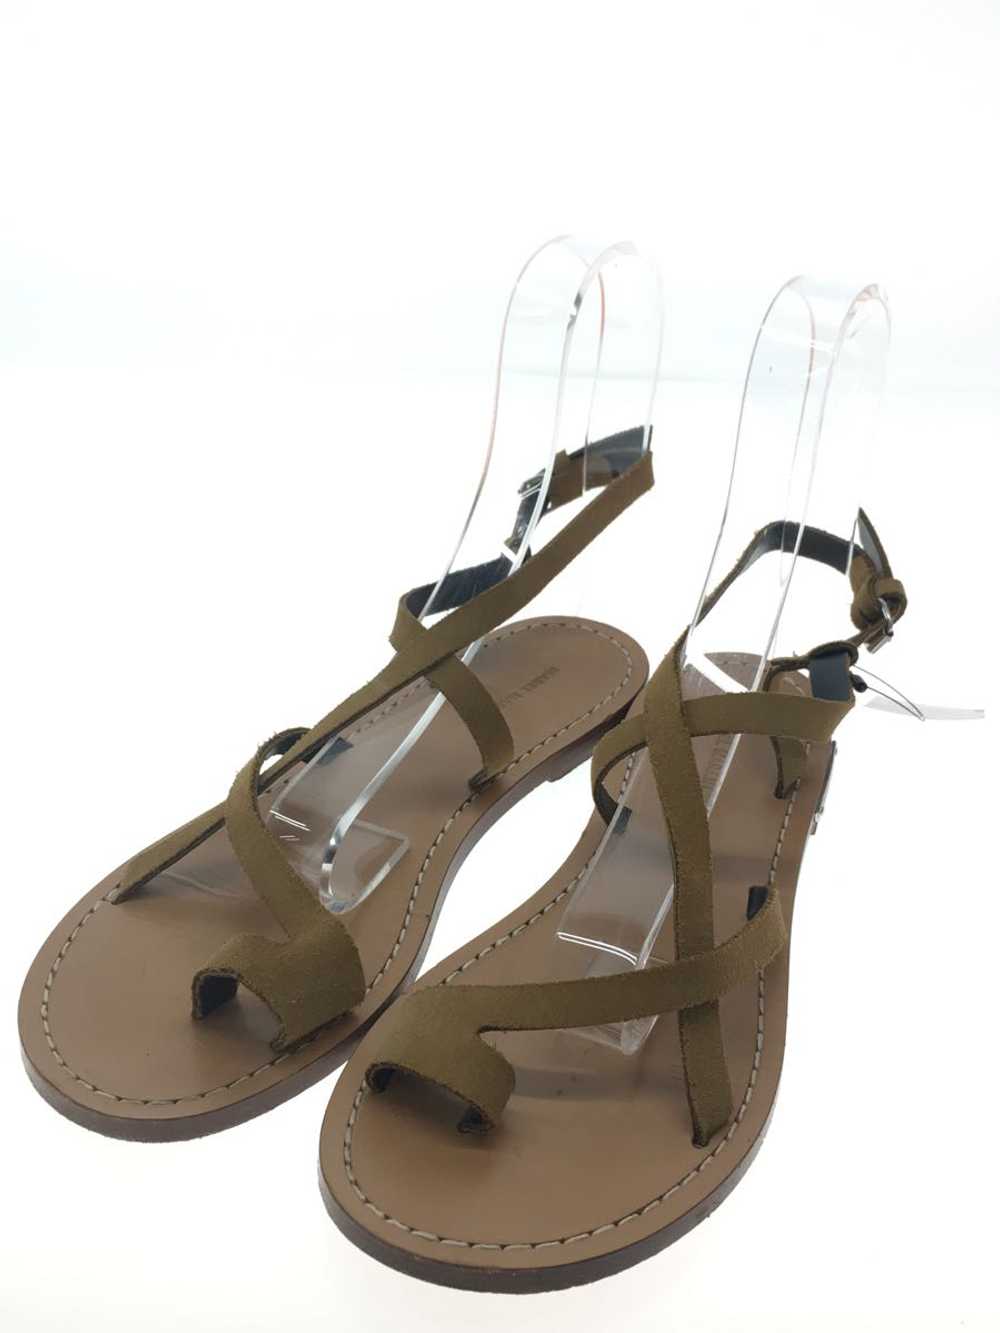 Isabel Marant Sandals/37/Camel/Suede Shoes BLr22 - image 2